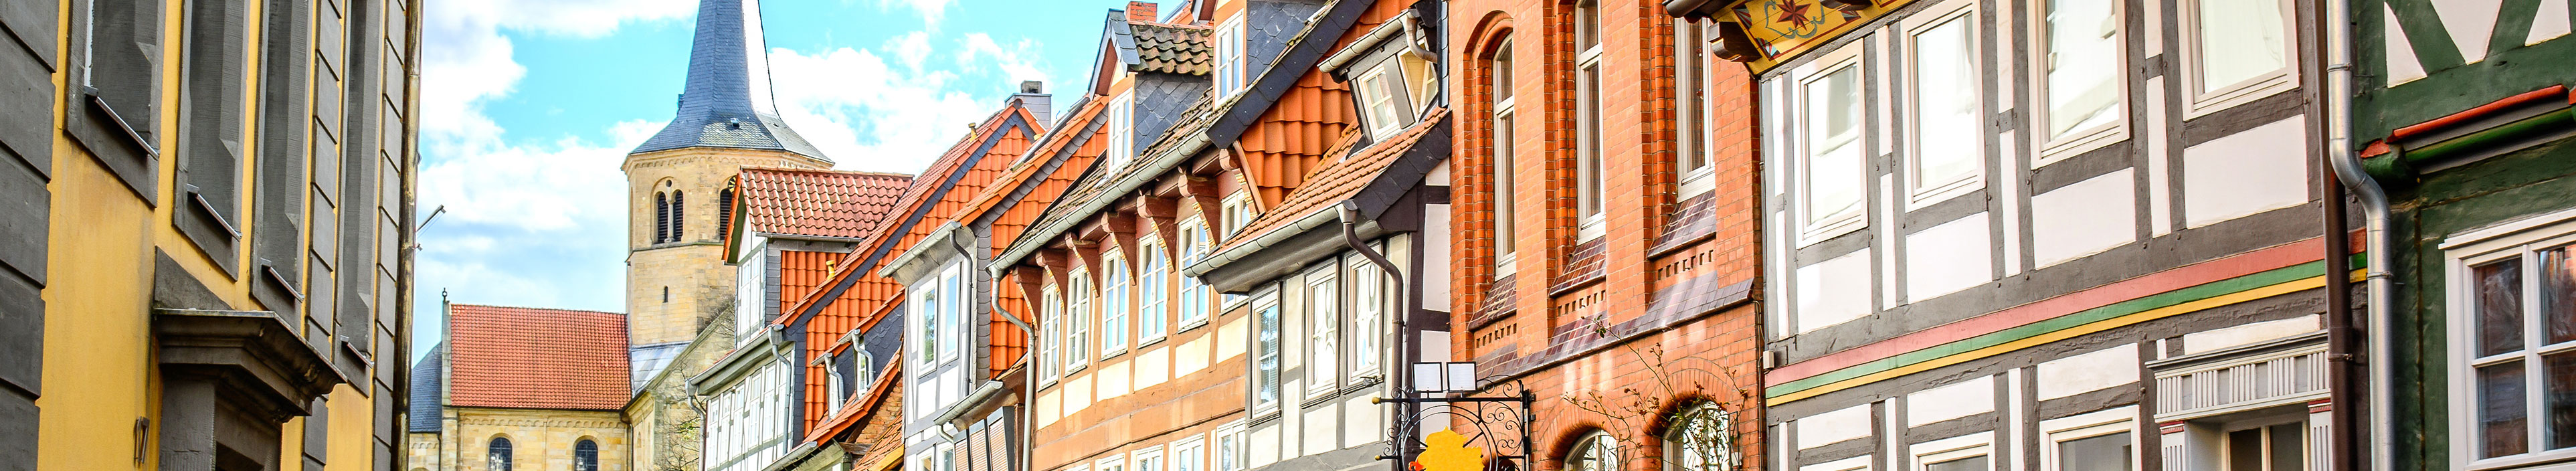 Traditionelles deutsches Haus in Goslar, Deutschland